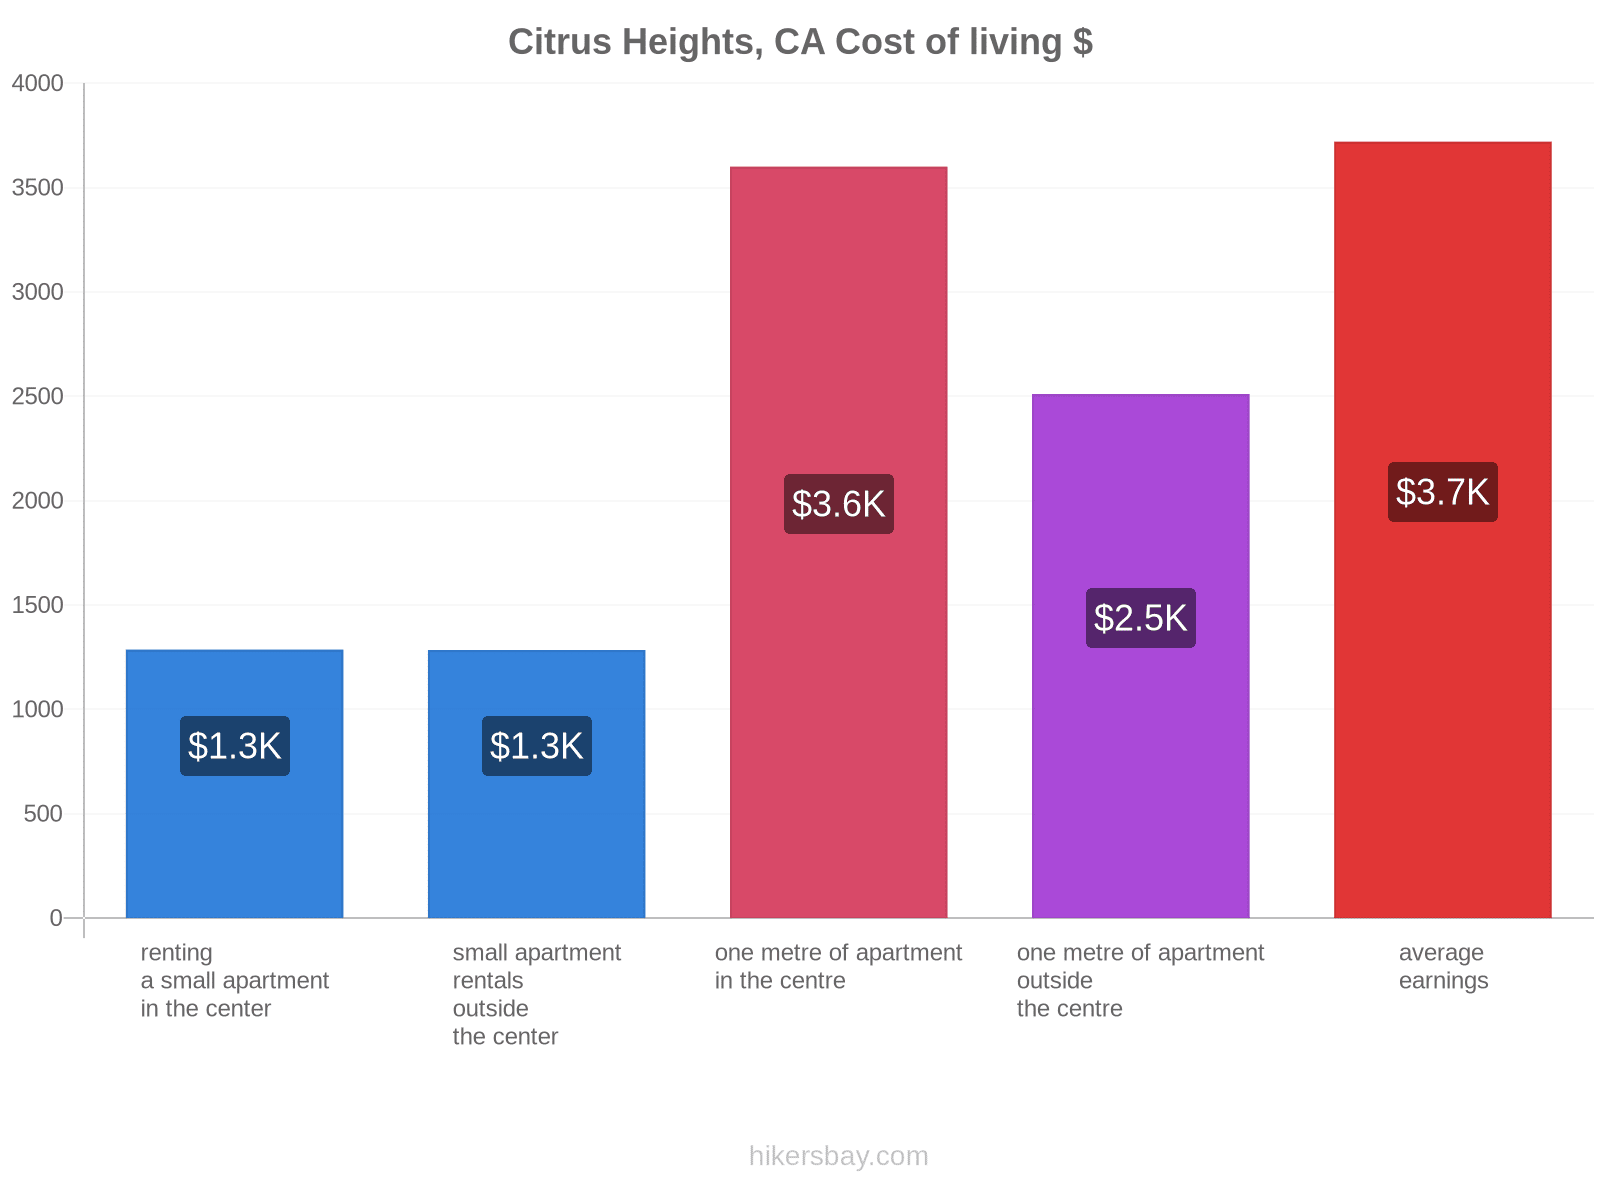 Citrus Heights, CA cost of living hikersbay.com